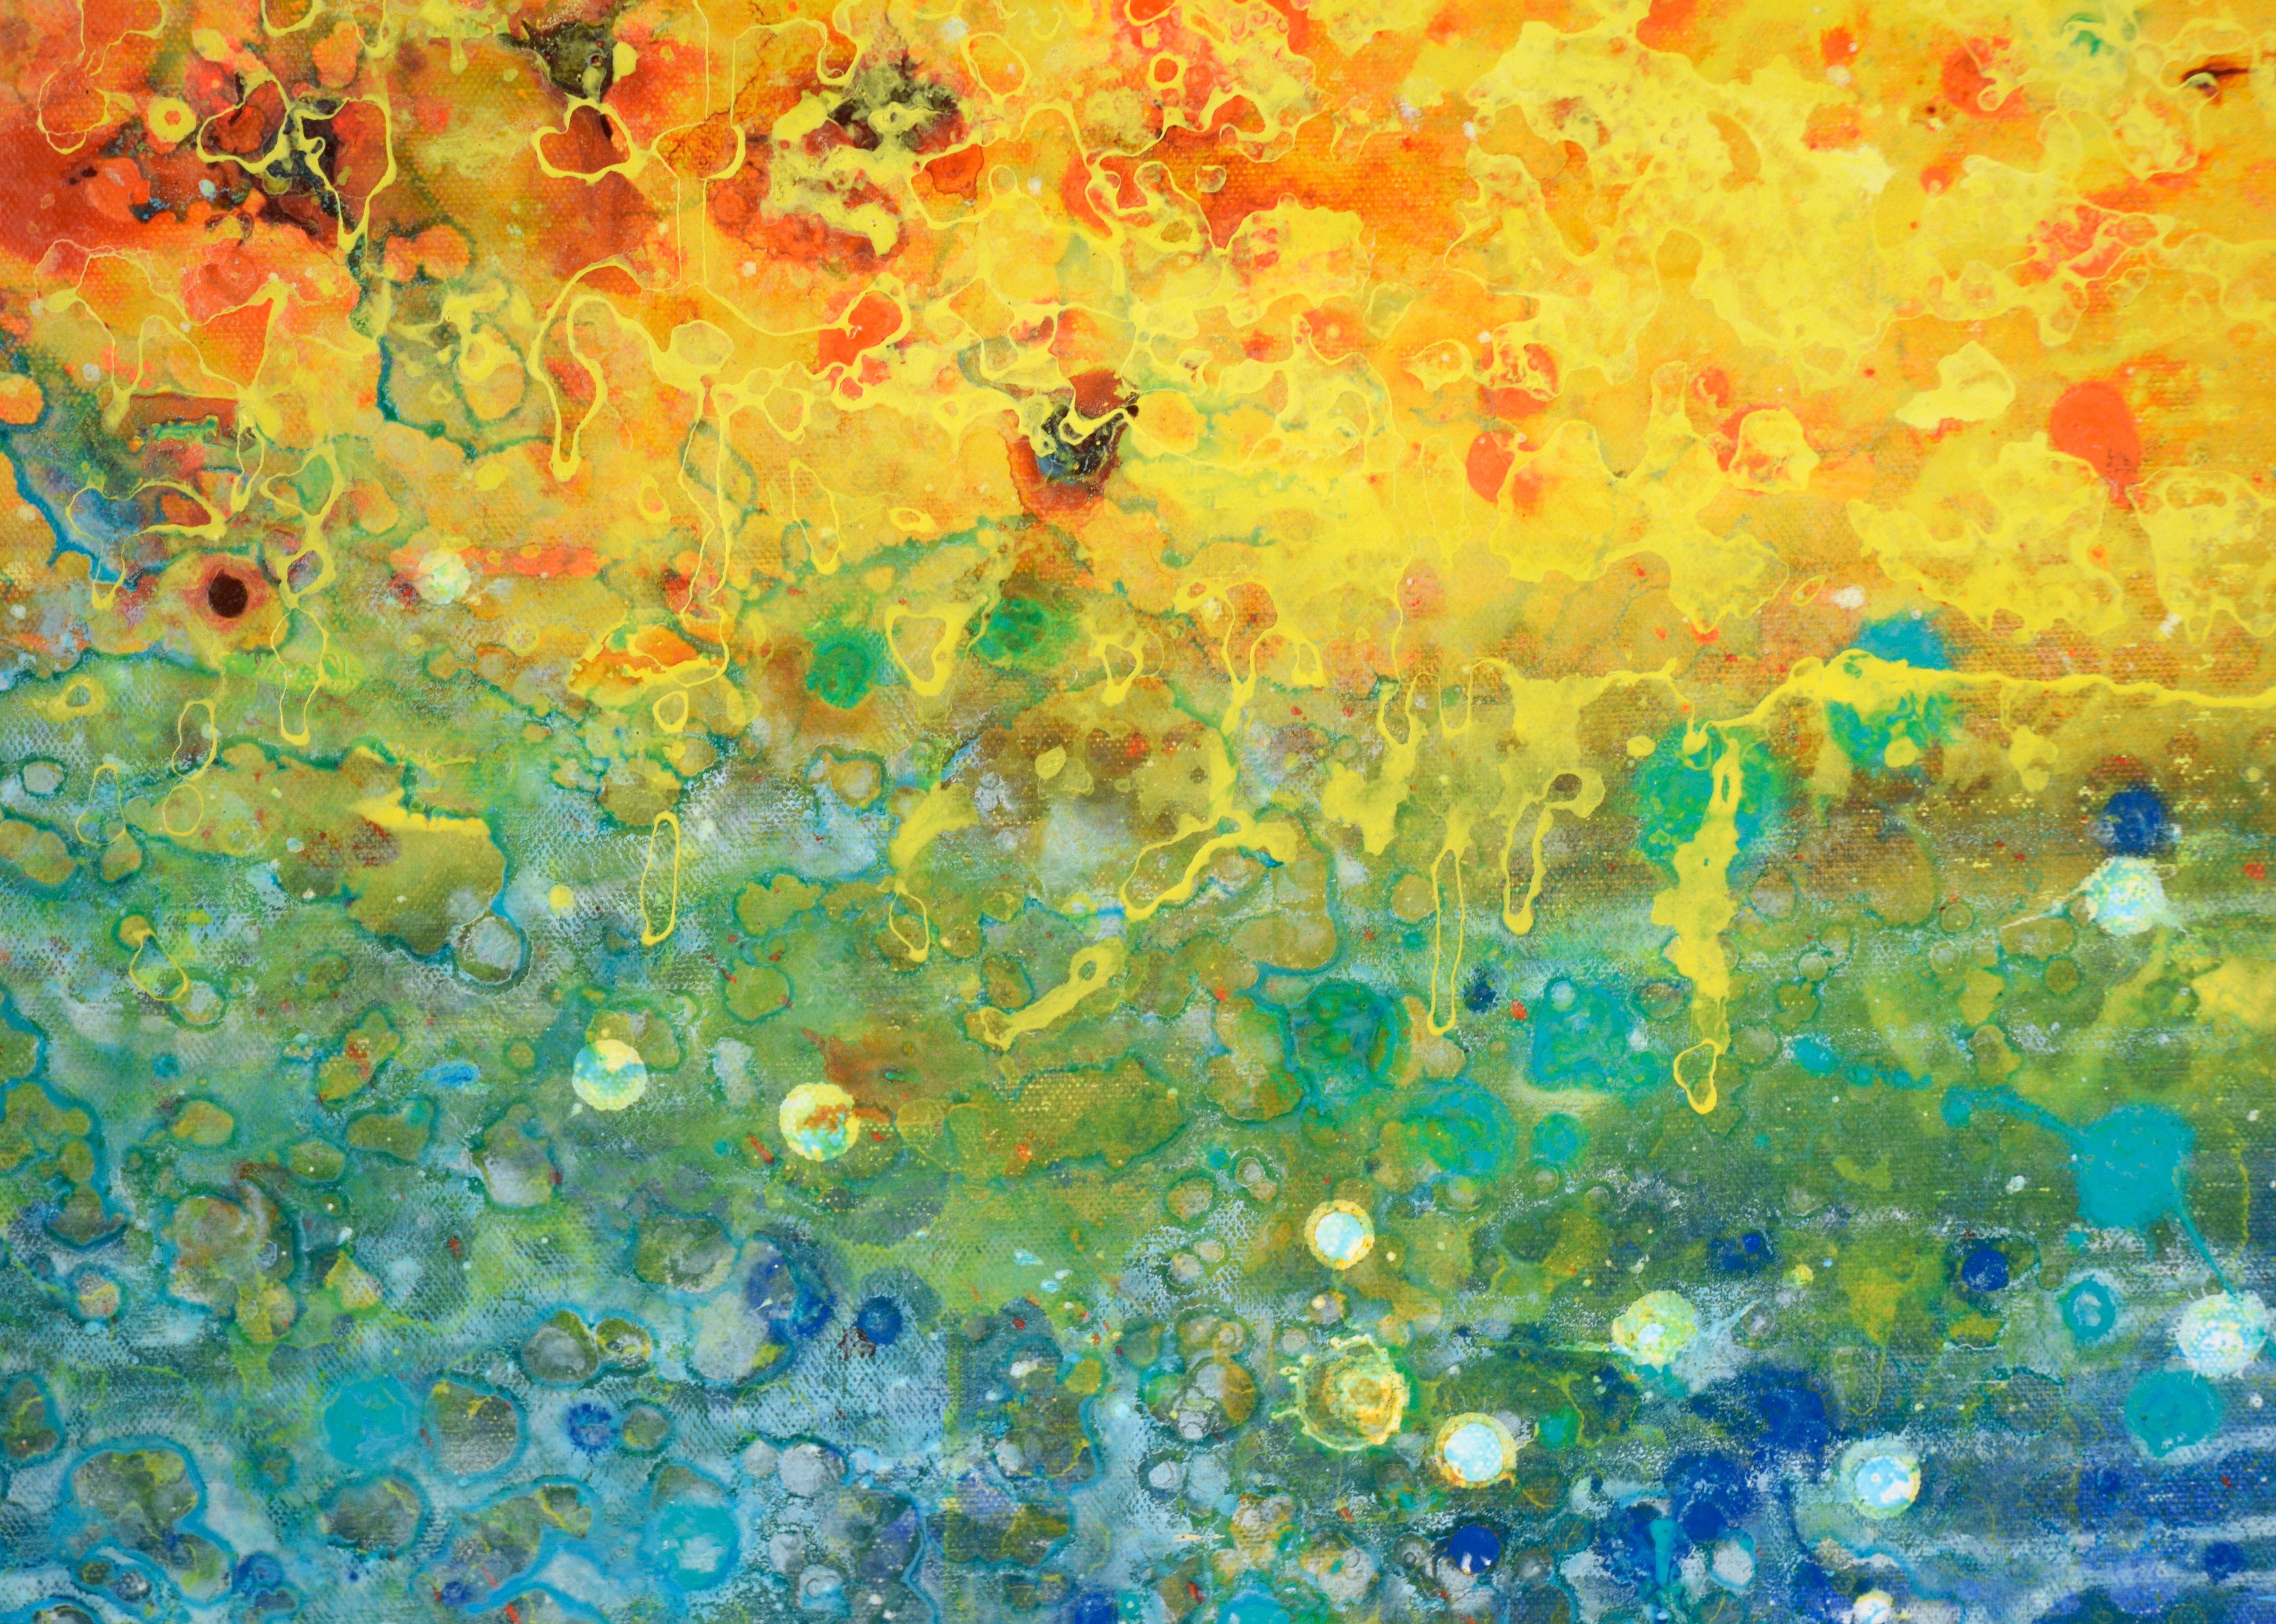 Feuer und Wasser – Abstrakte expressionistische Komposition aus Acryl auf Leinwand

Lebendige und ausdrucksstarke Komposition des kalifornischen Künstlers Charles 